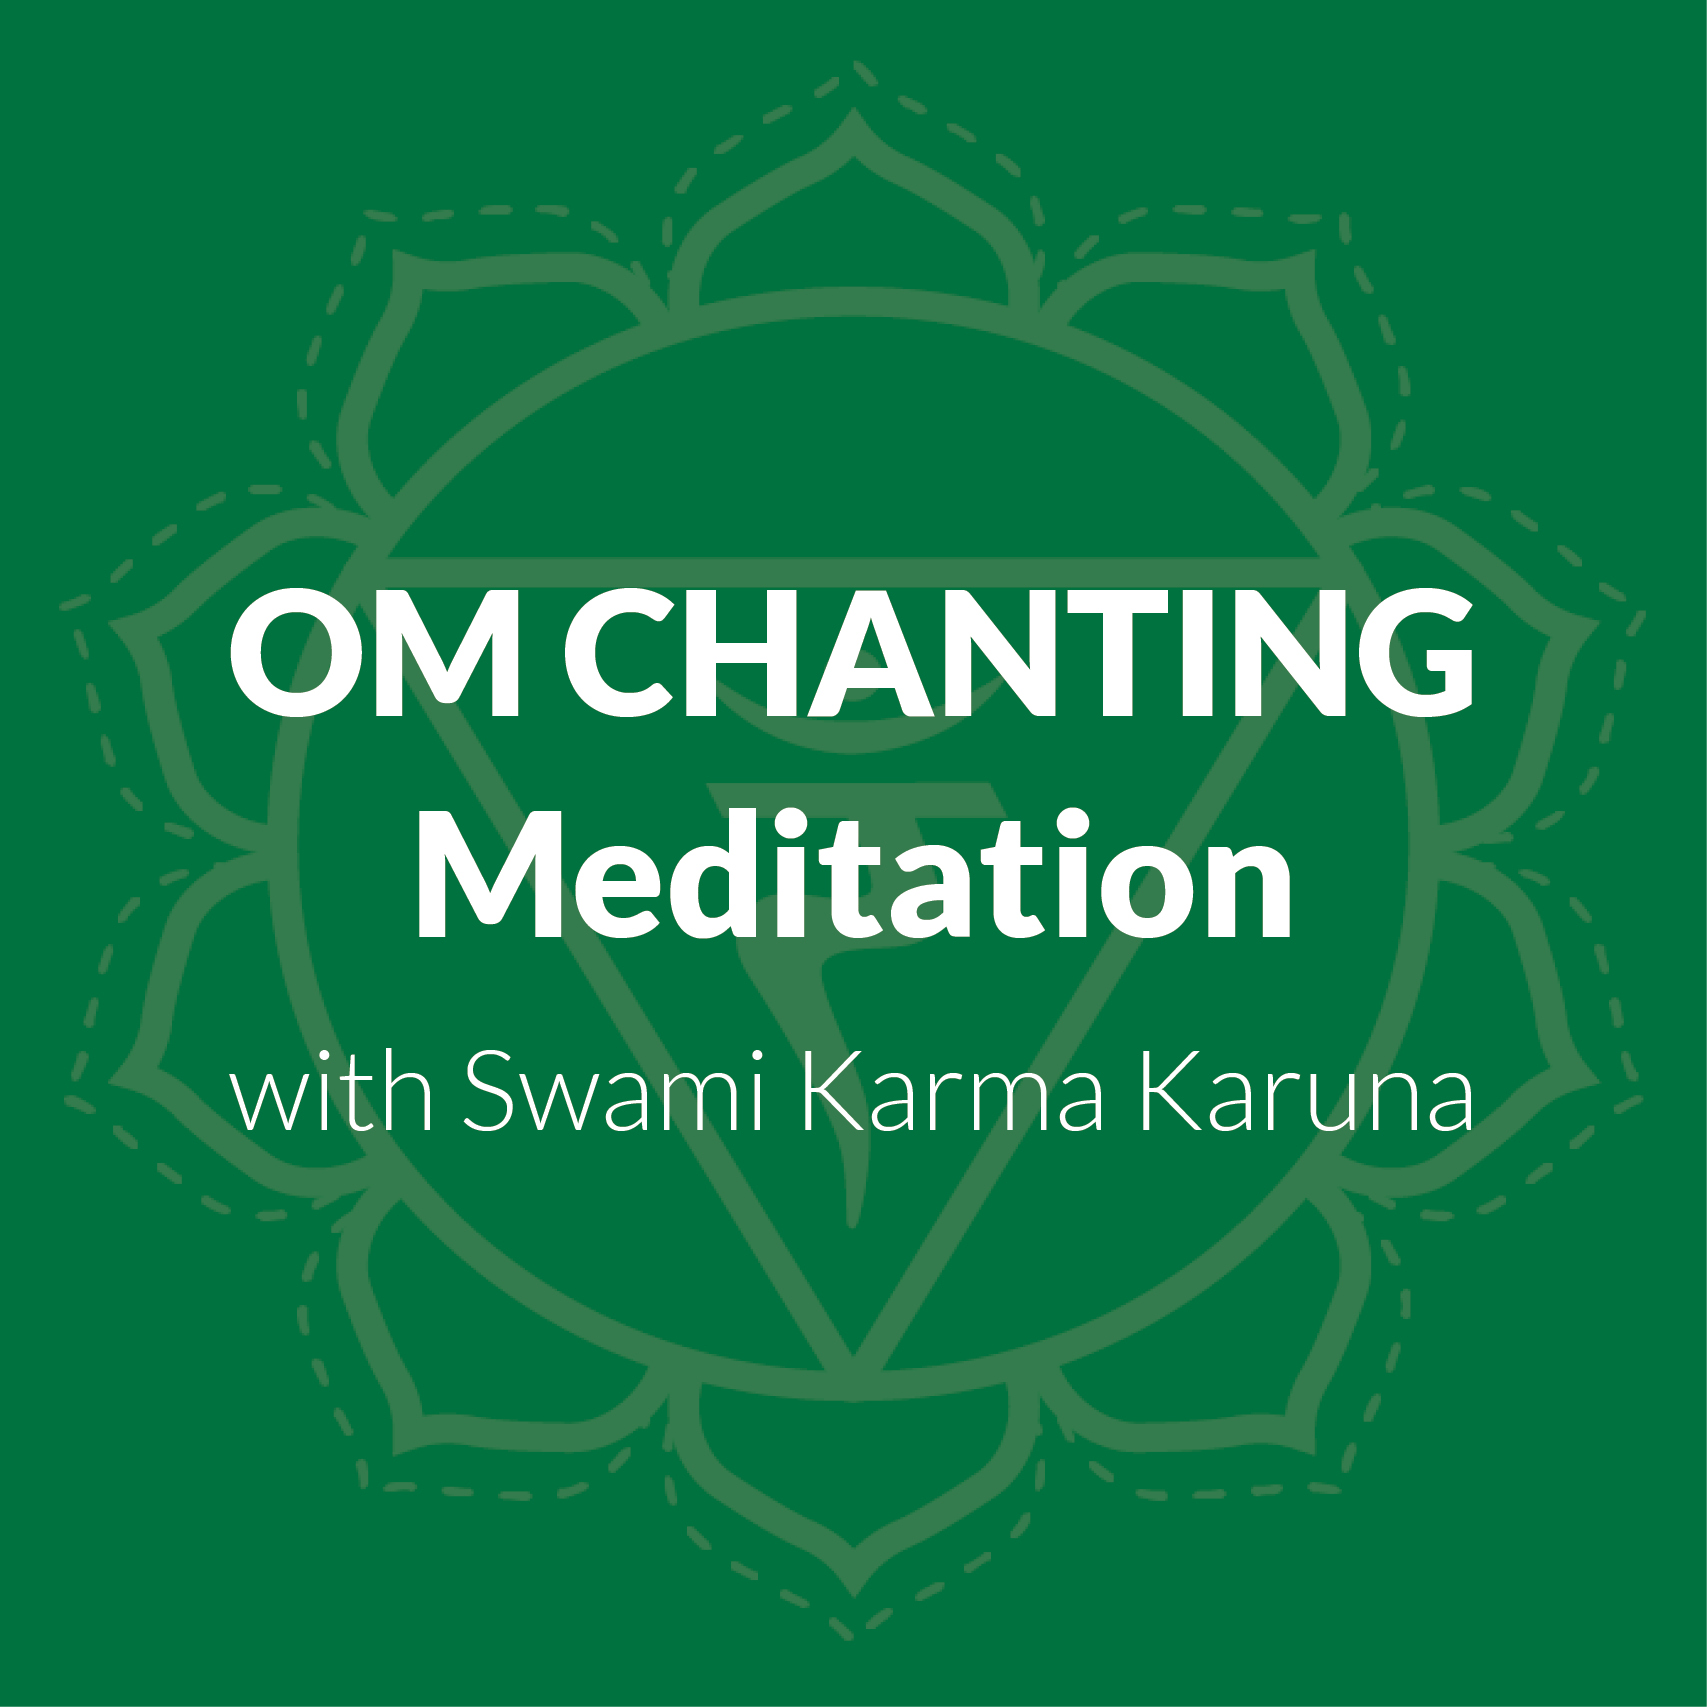 Om Chanting Meditation